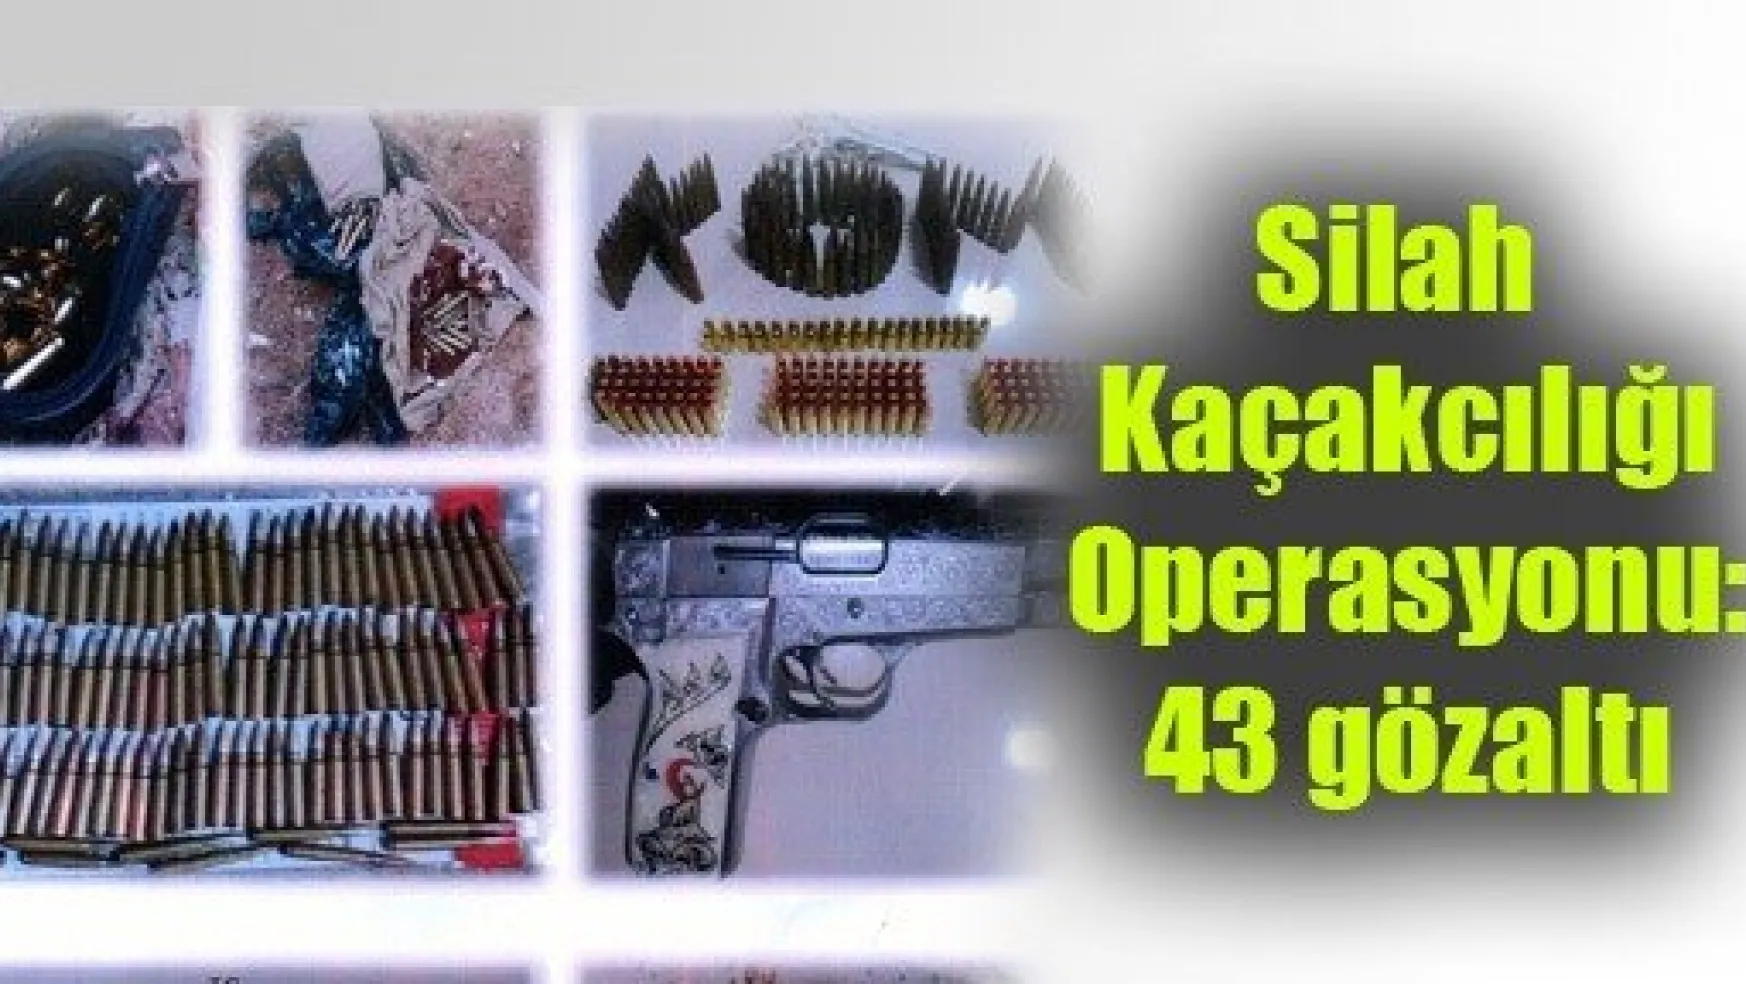 Silah Kaçakcılığı Operasyonu: 43 gözaltı